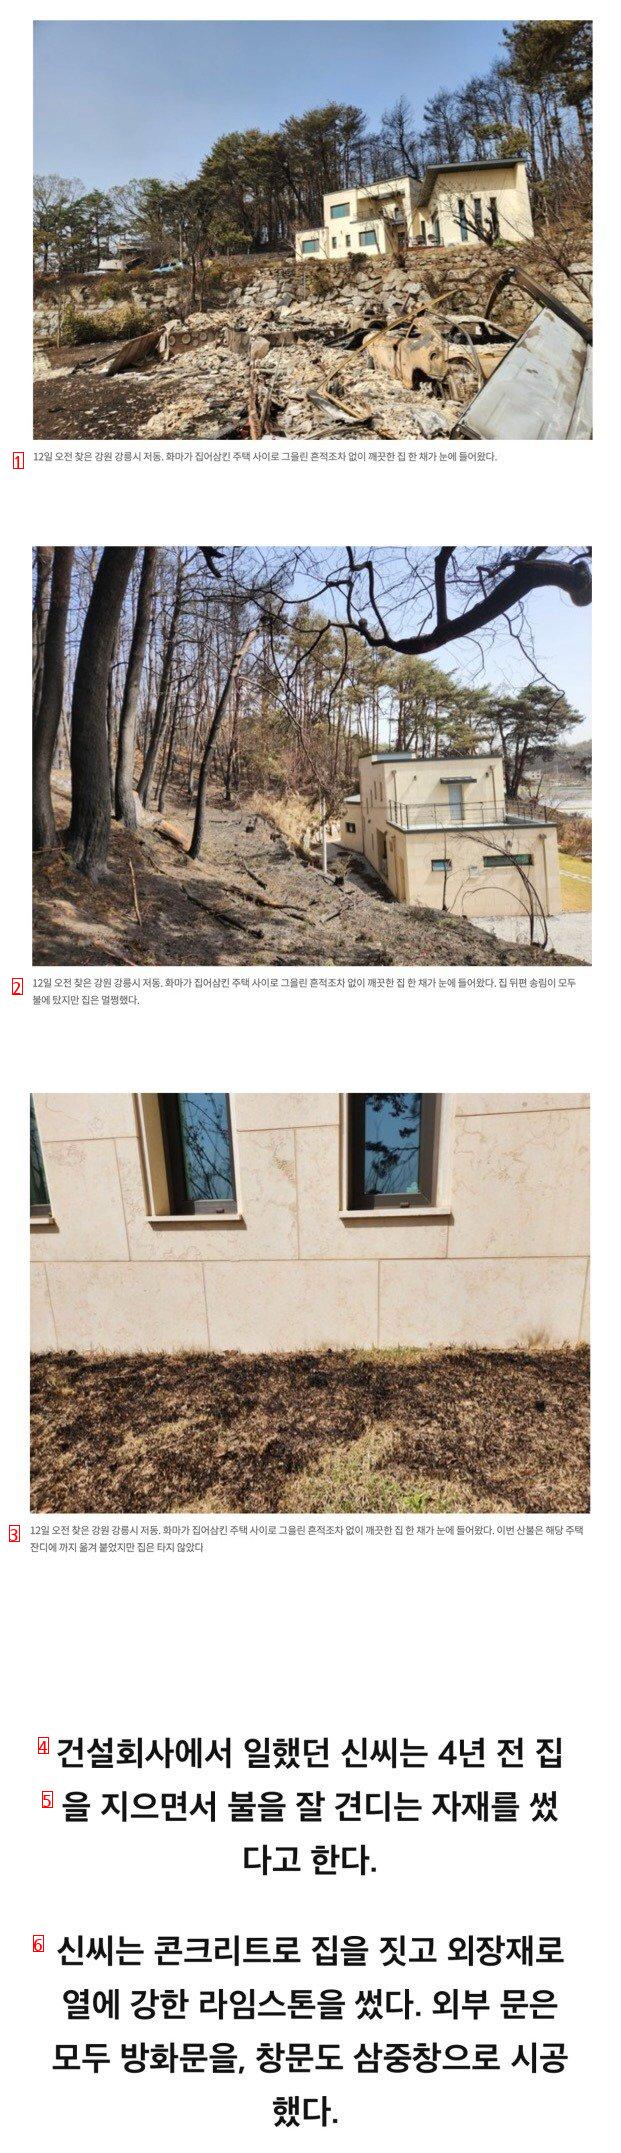 강릉 산불에서 살아남은 집.jpg